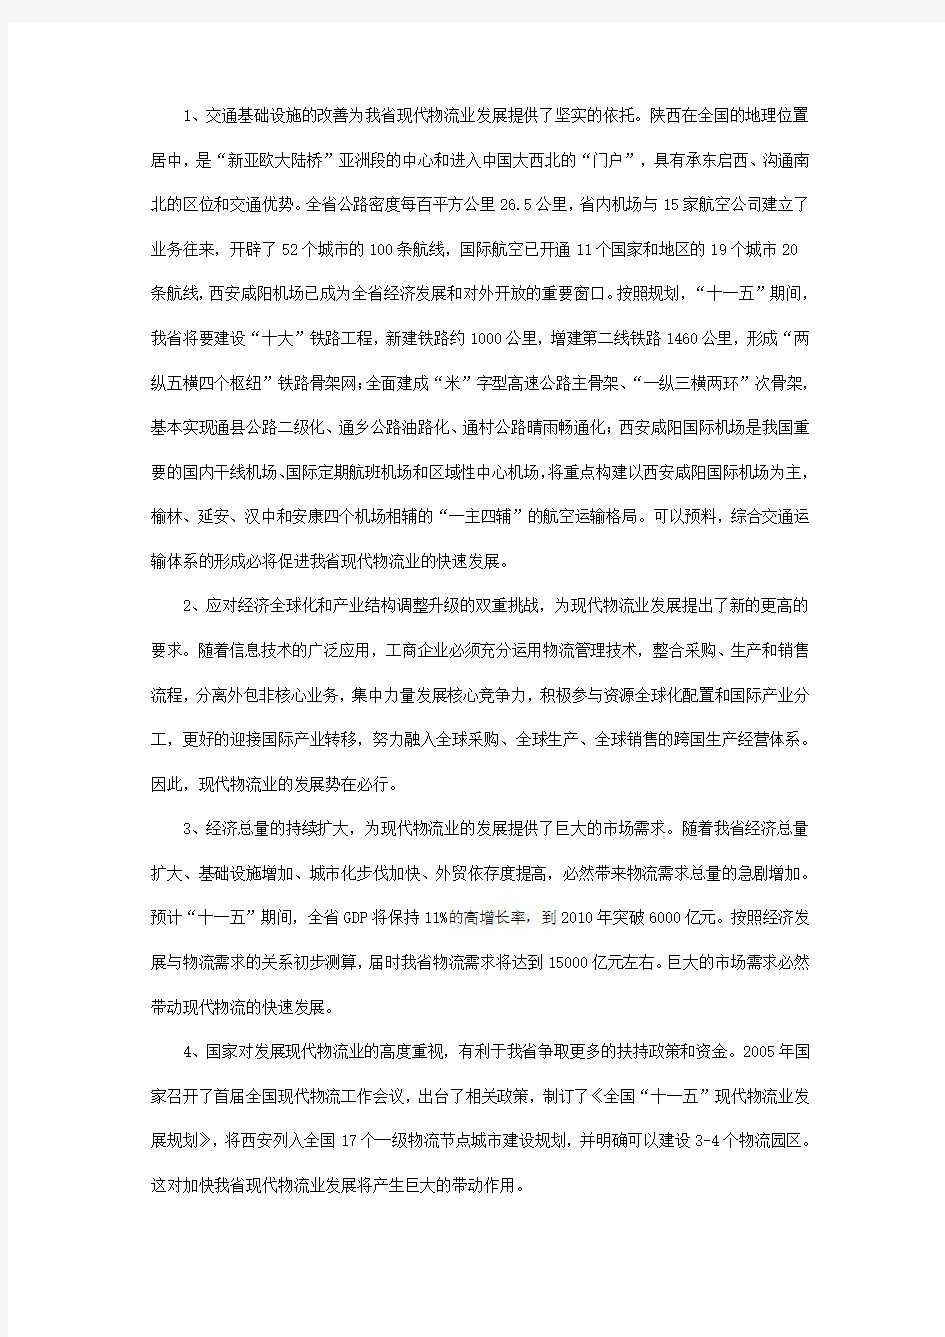 陕西省现代物流业第十一个五年发展规划